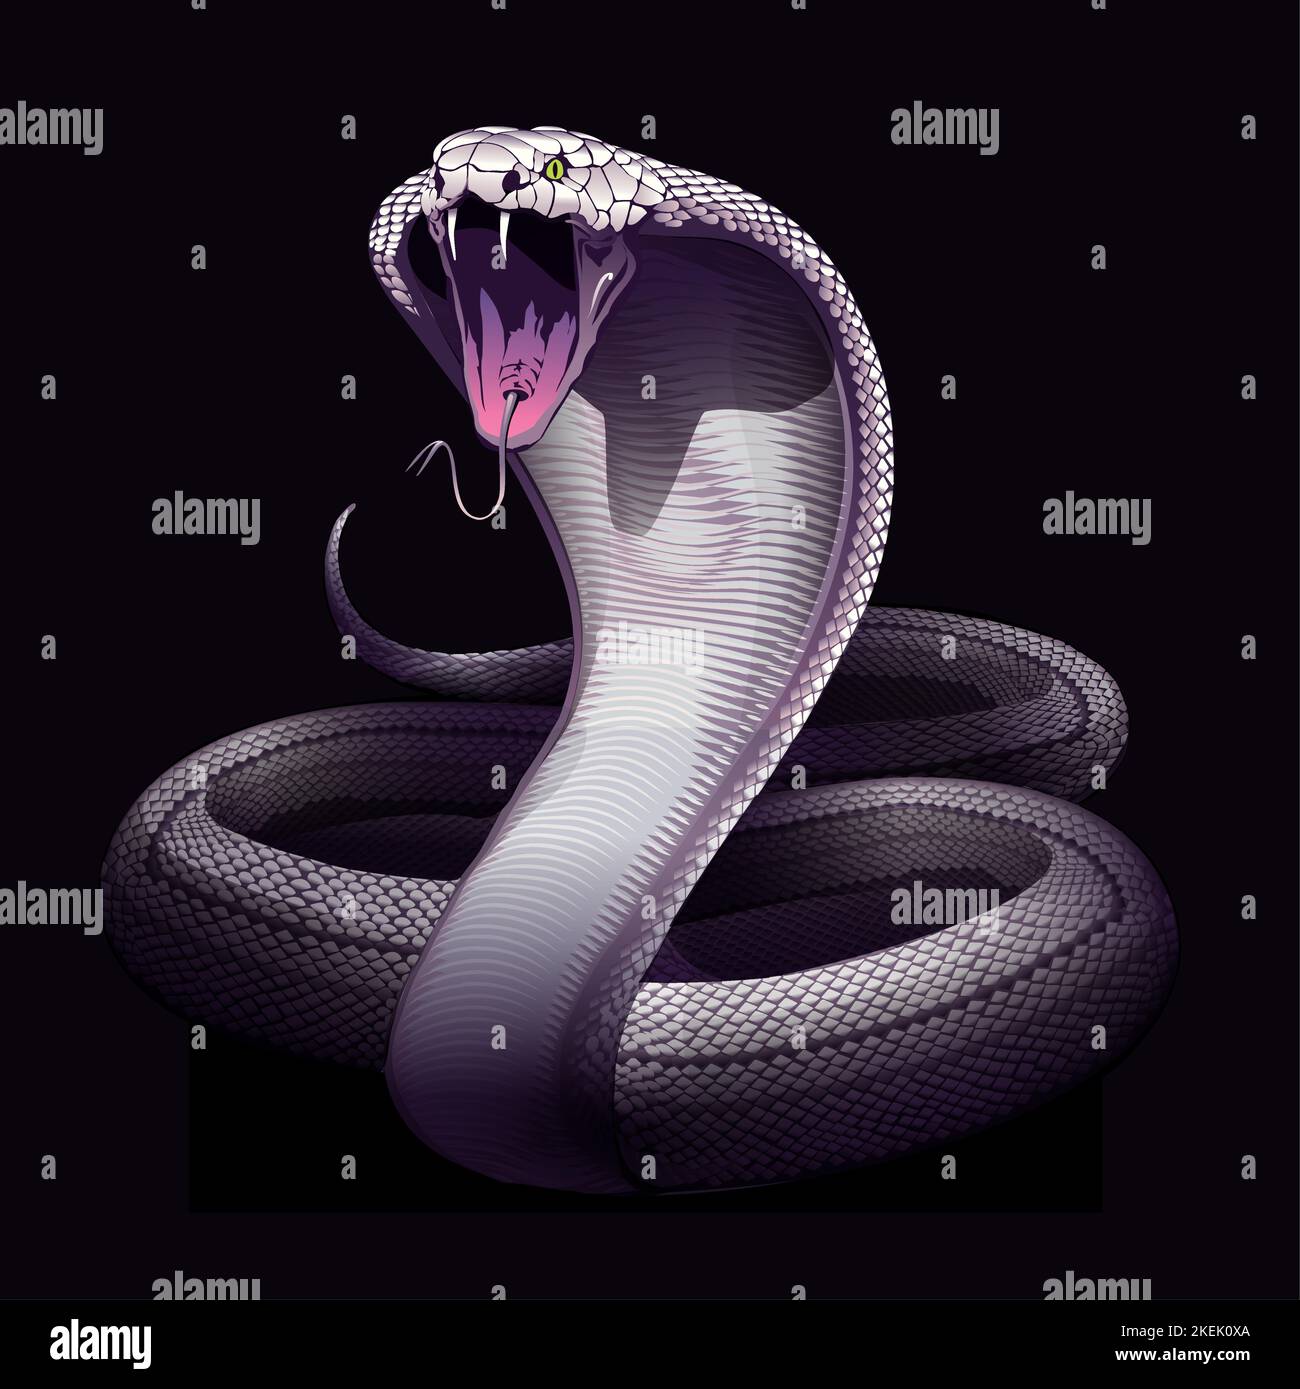 Serpente. Cobra. Illustrazione vettoriale a mano del serpente nella tecnica di incisione isolata su sfondo bianco. Poster occulto, stampa t-shirt, copertina. Illustrazione Vettoriale